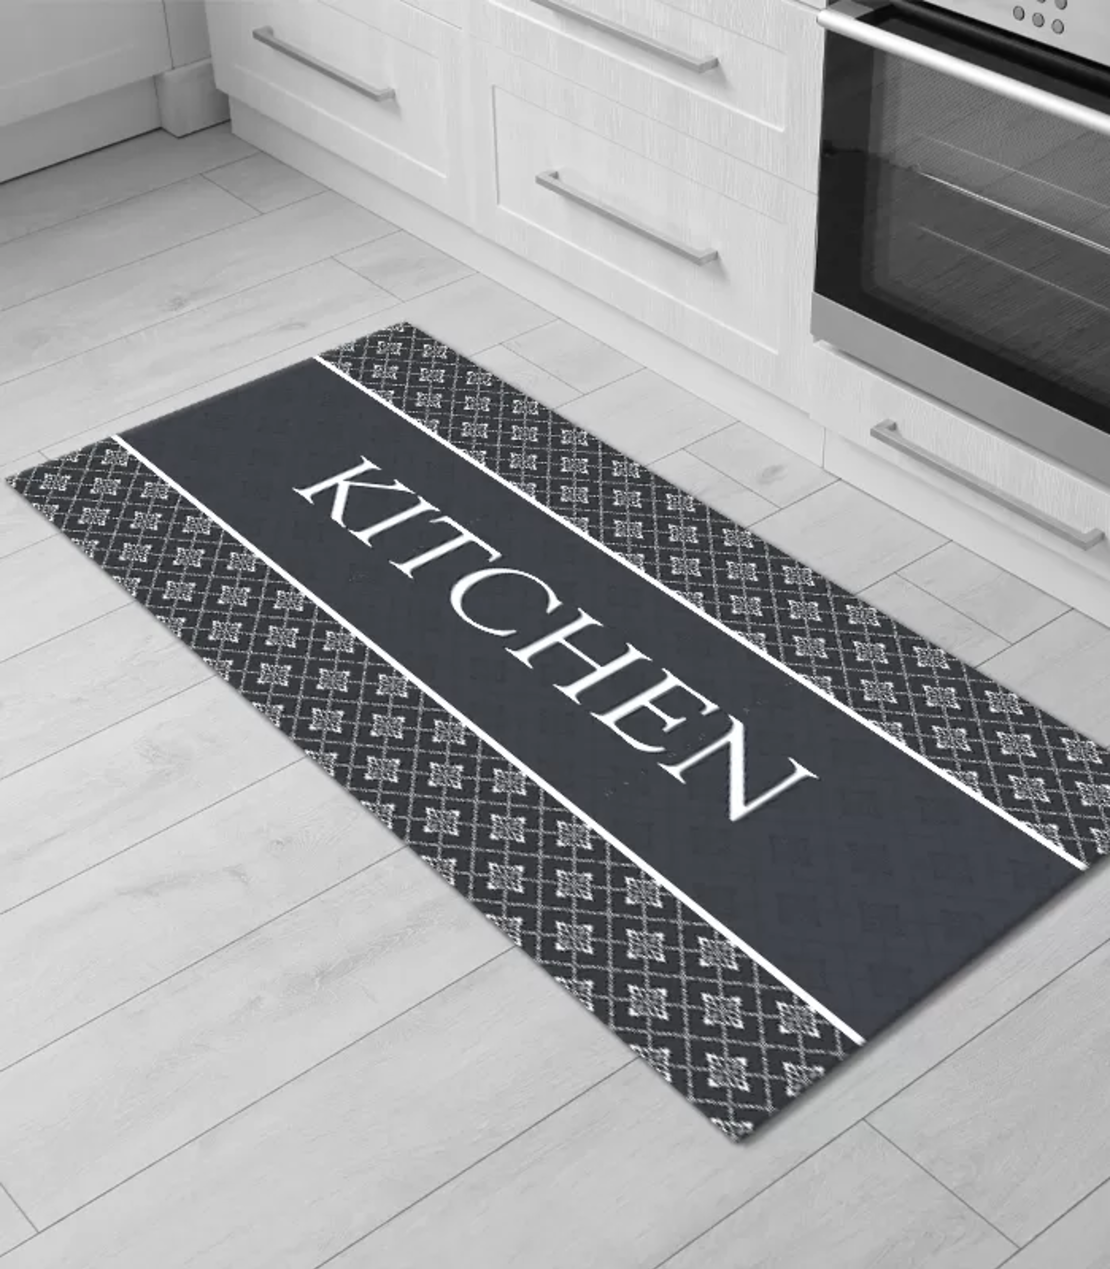 שטיחון רצפה למטבח דגם מטבח מעוצב 60/120